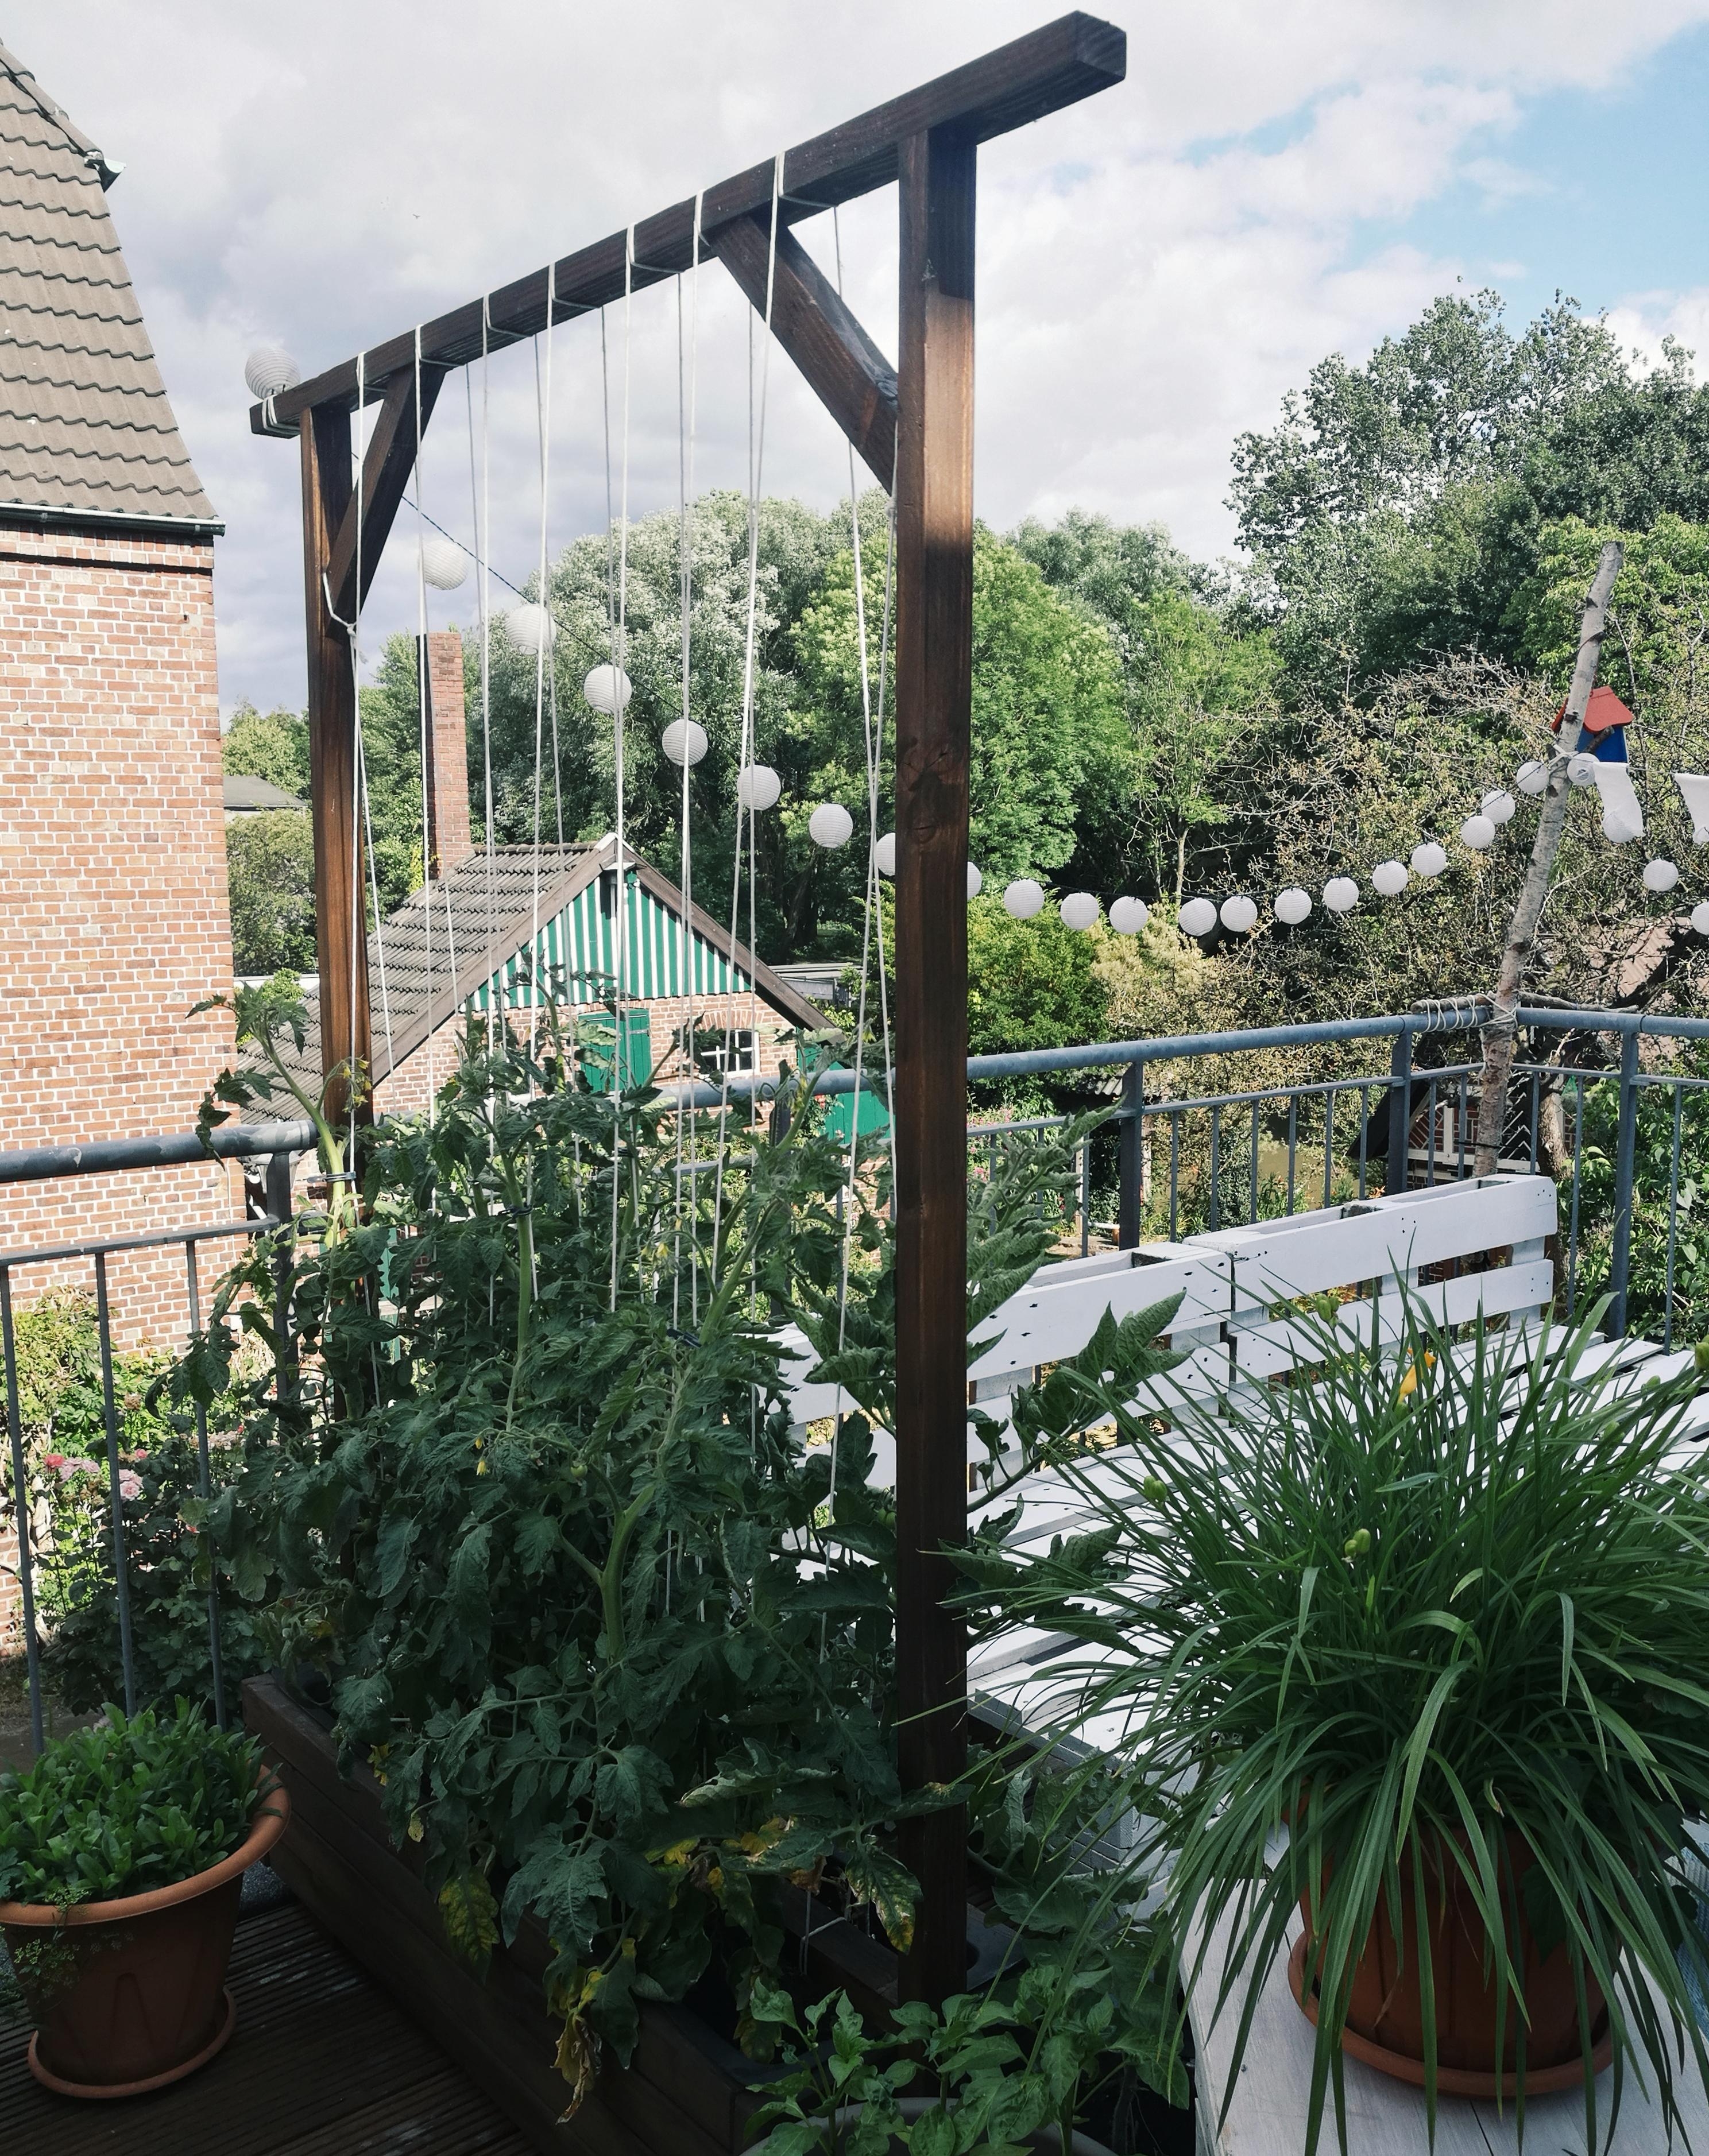 Balkontomaten im DIY-Pflanzkübel 1

#outdoorweek #urbangardening #tomate #balkongemüse #diy